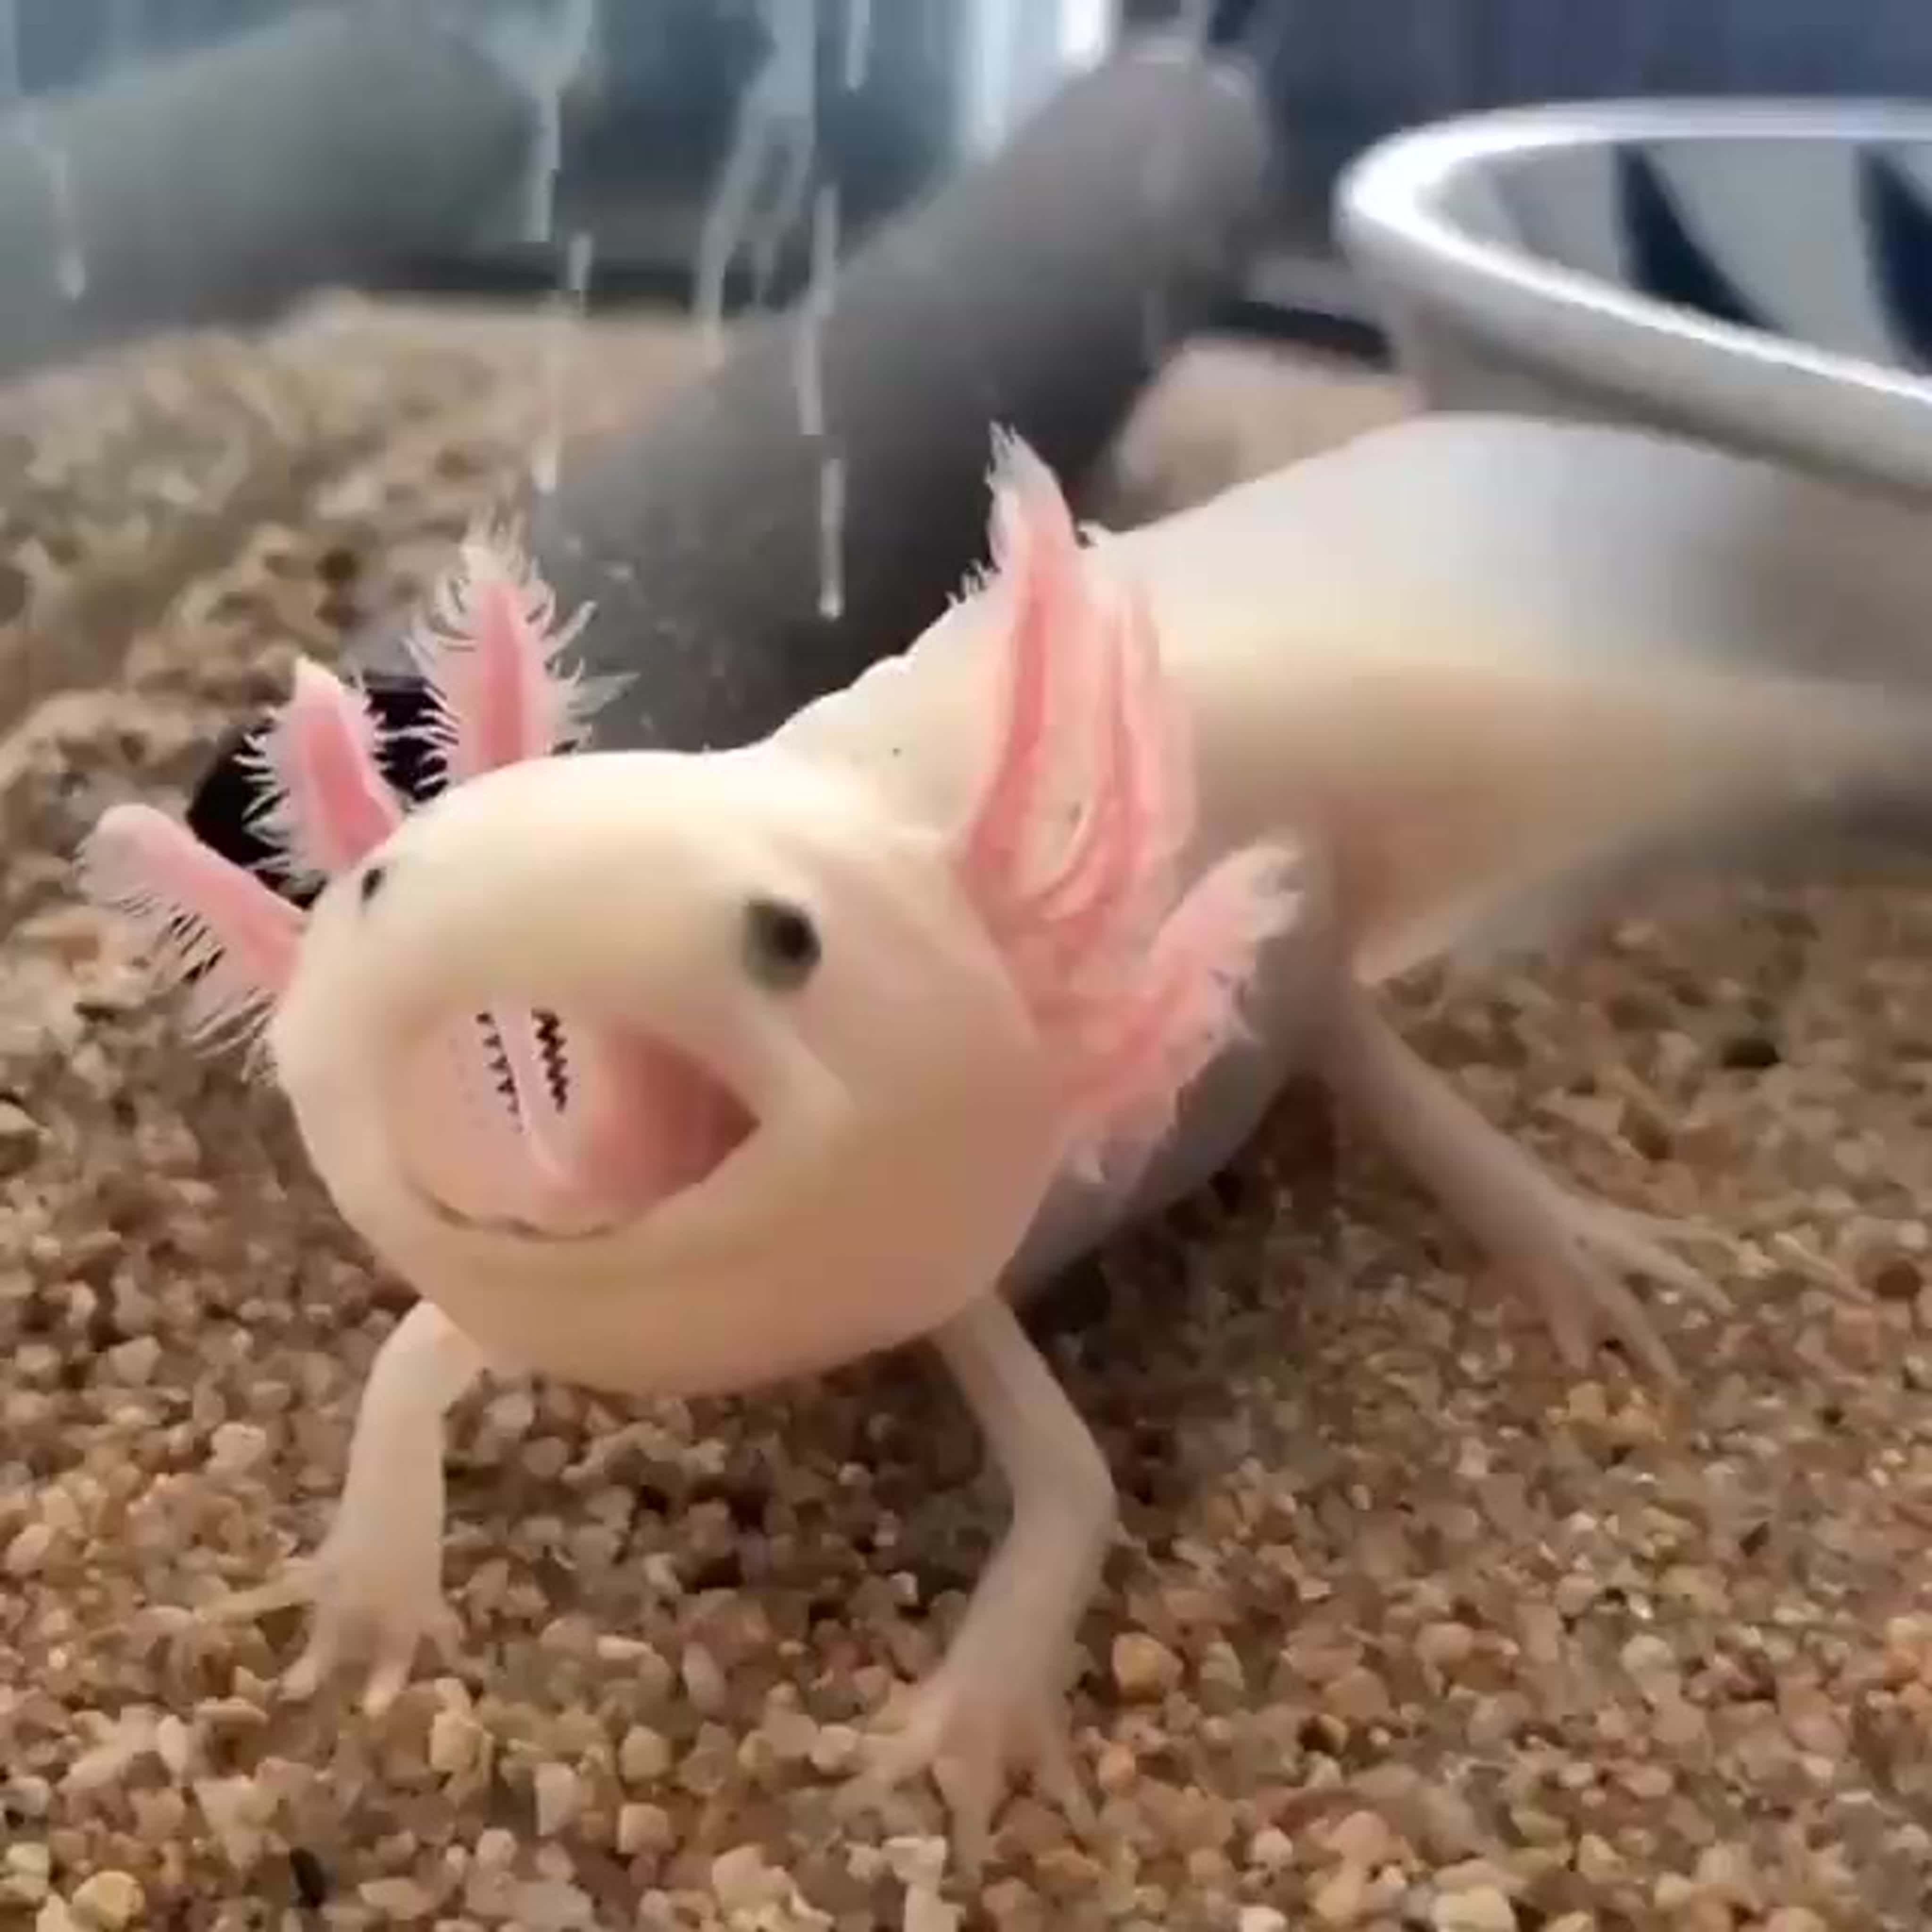 Axolotl Video